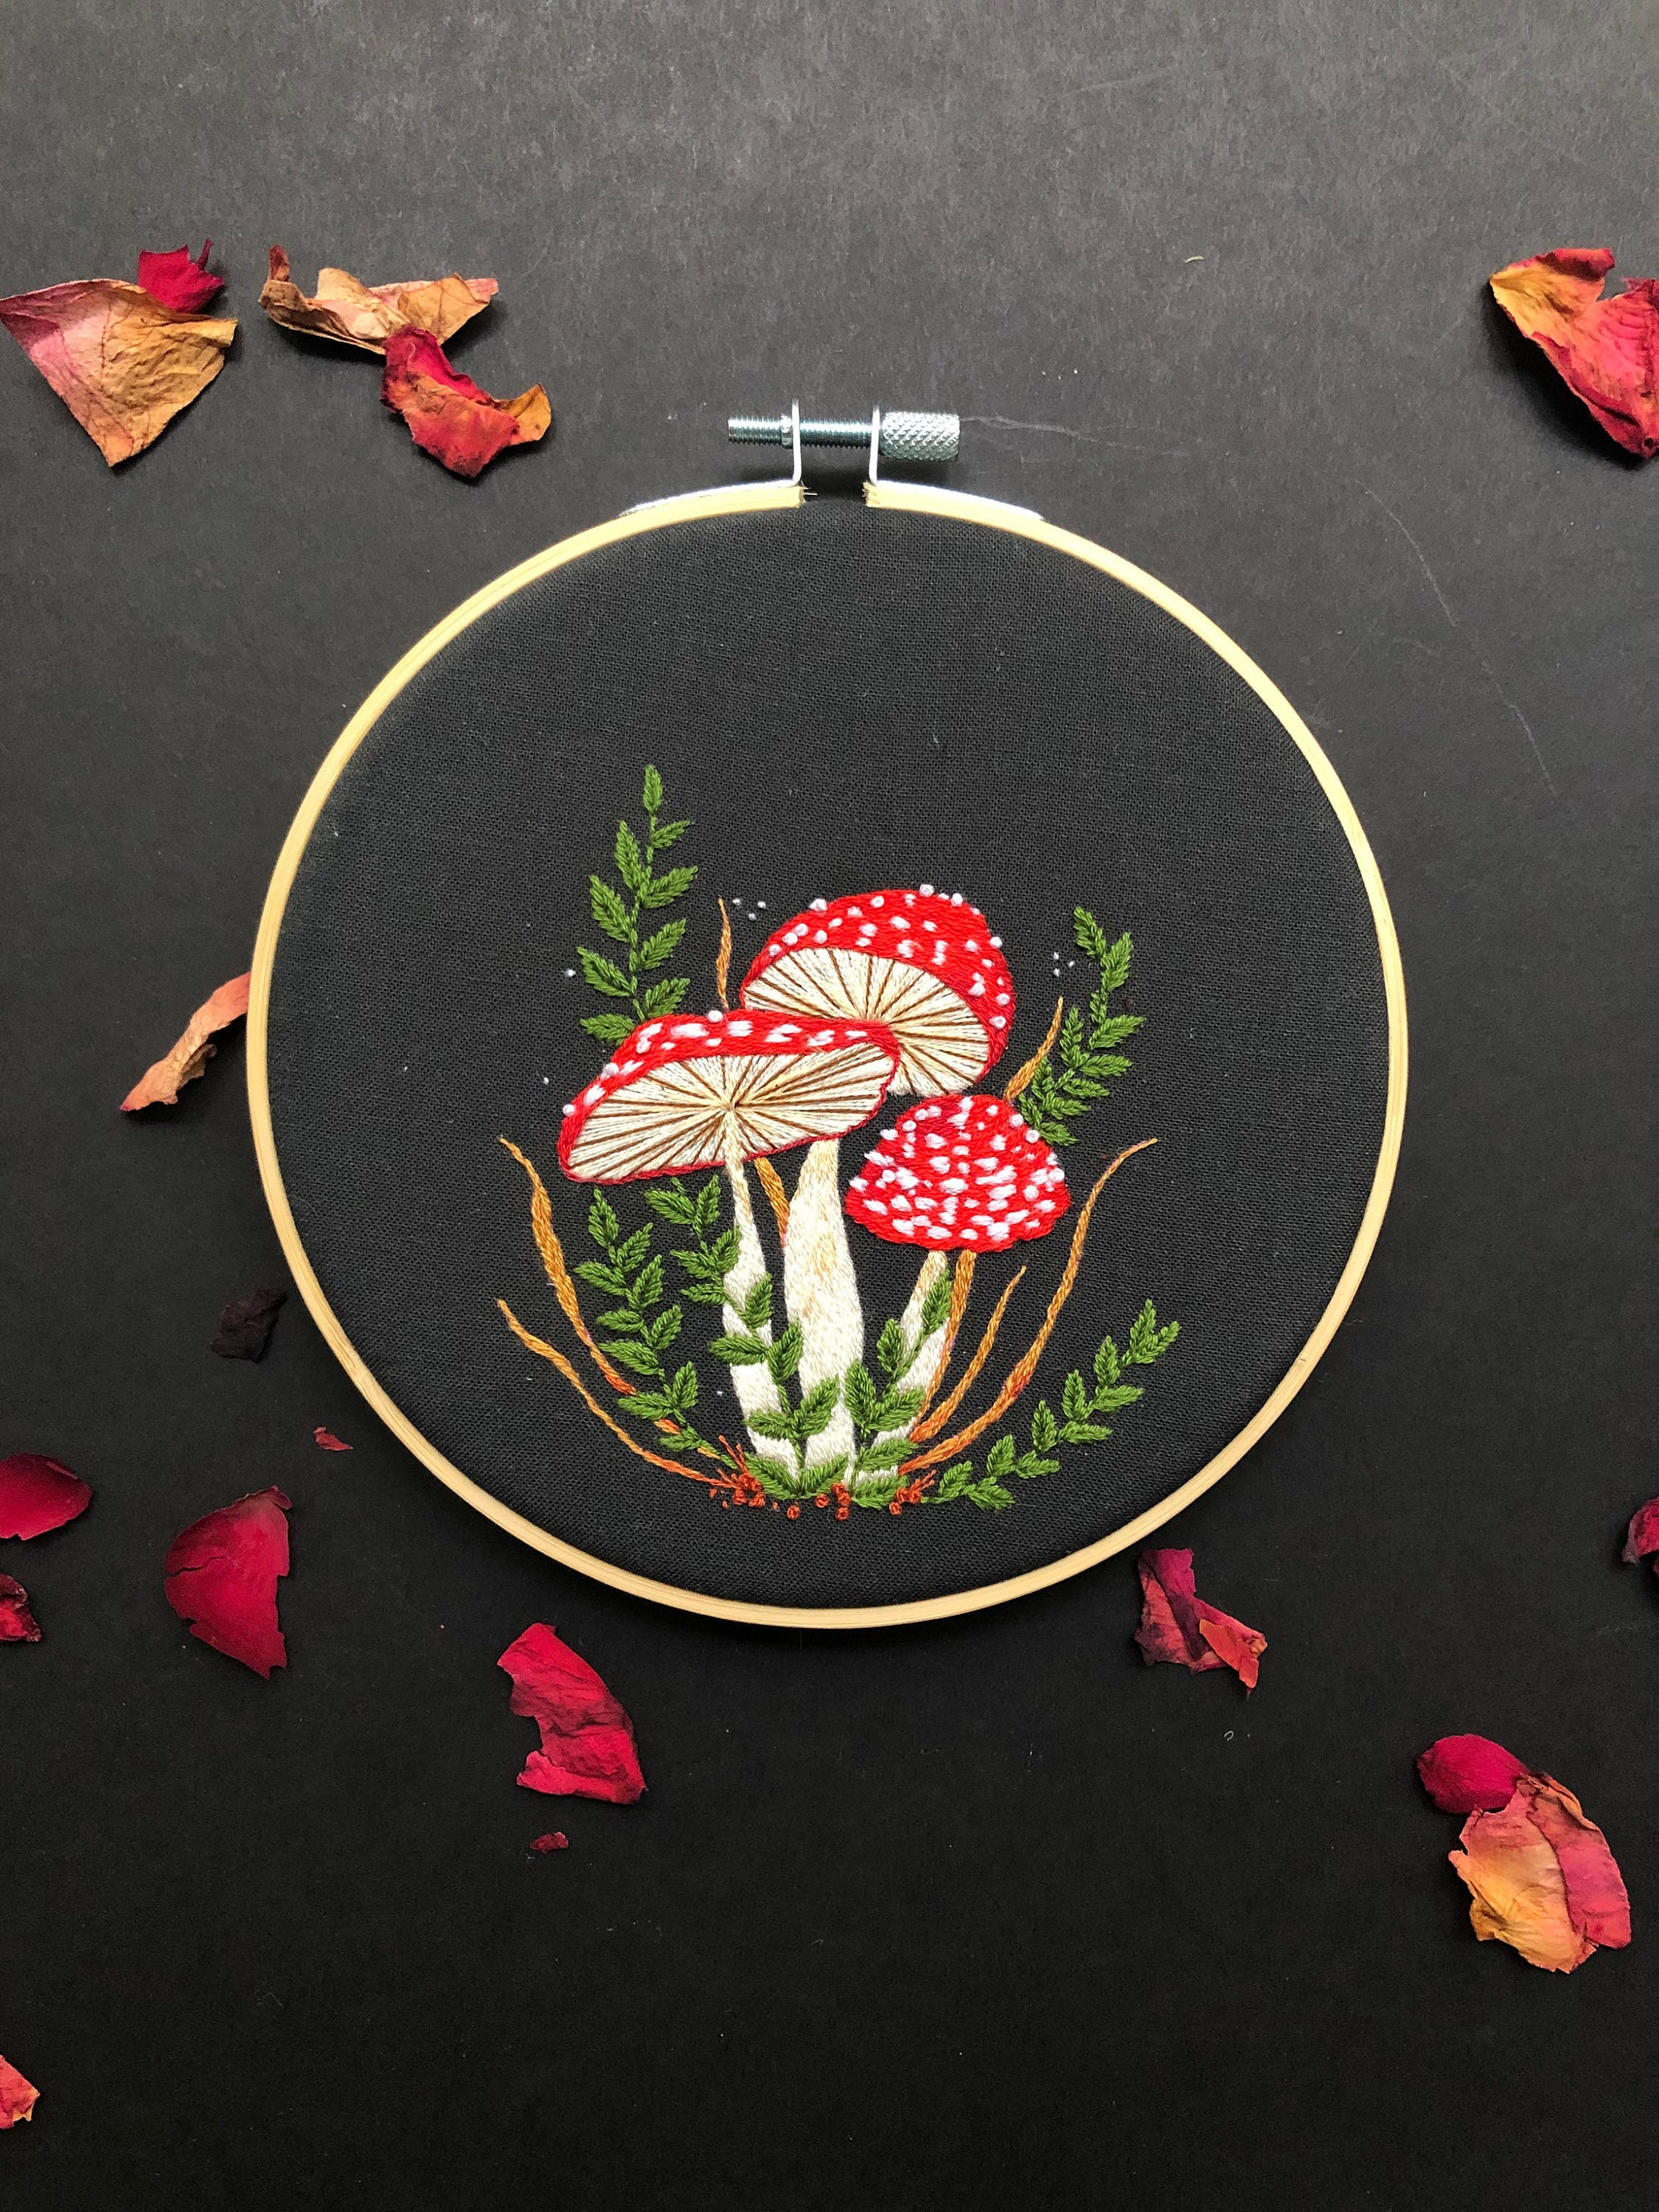 Mushroom Embroidery, Nature Studies Embroidery Kit, Mushroom Ring Embroidery,  DIY Embroidery Kit, Heidi Boyd 